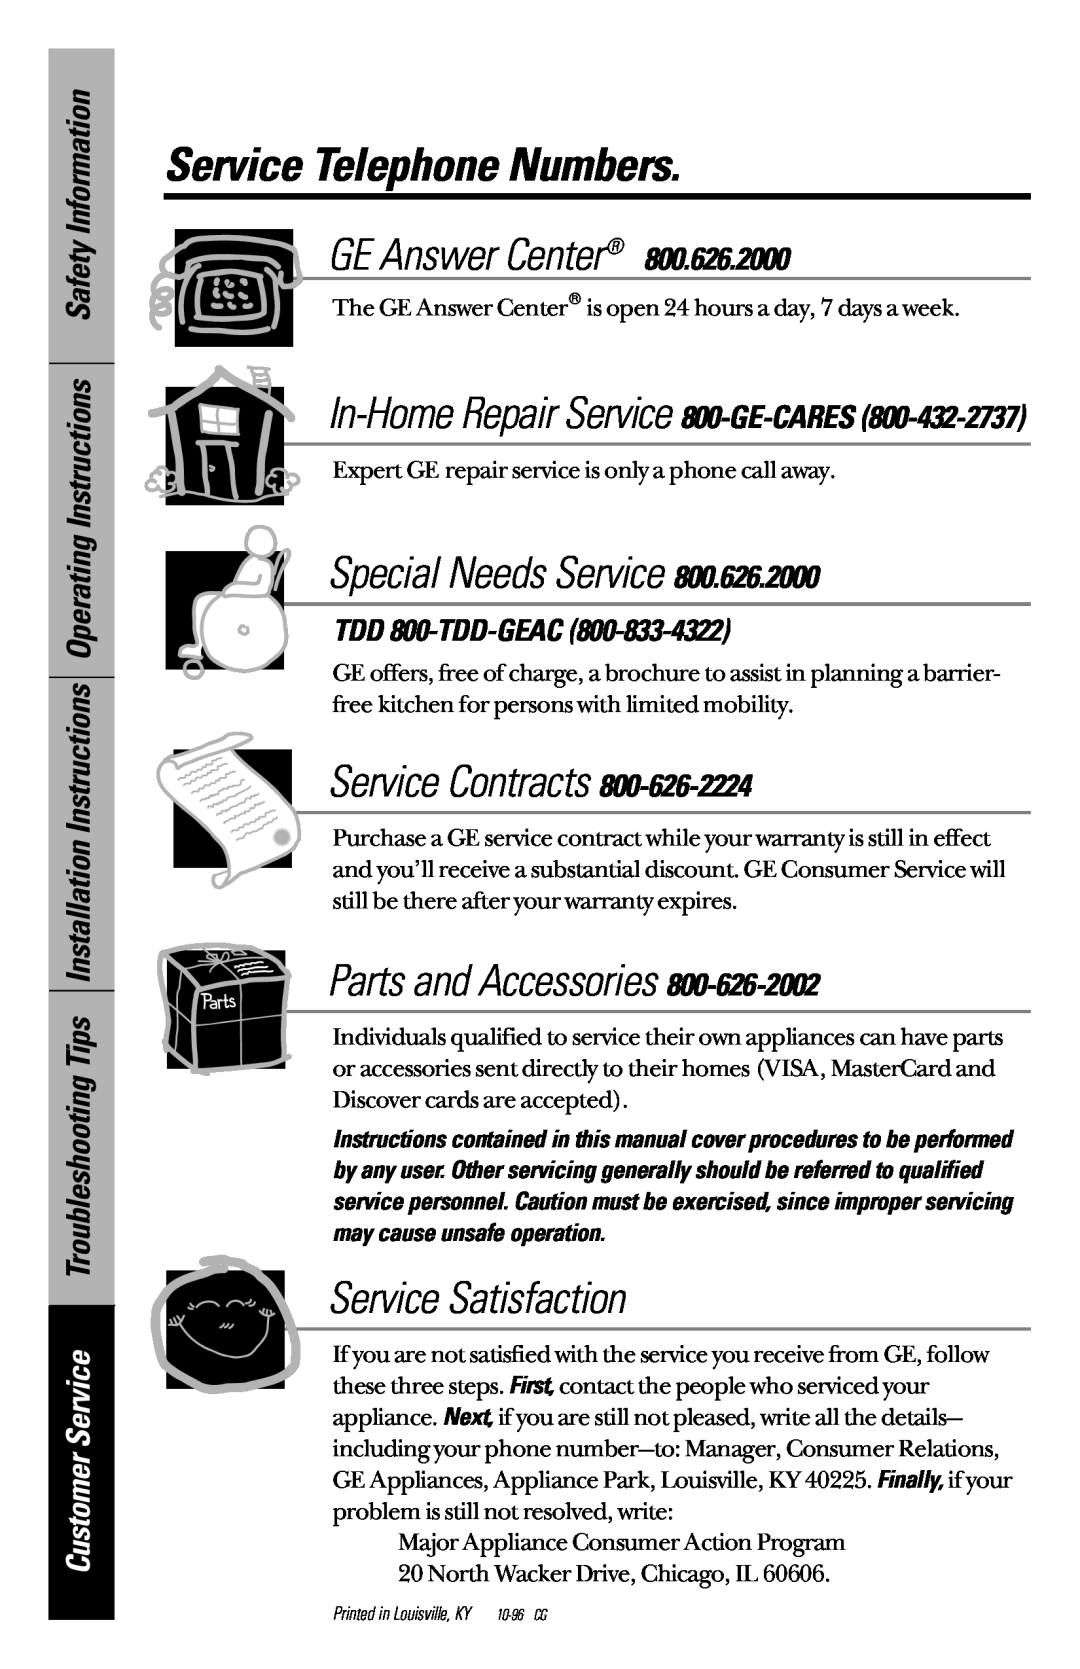 GE JBP45, JBP46, JBP47 Service Telephone Numbers, In-Home Repair Service 800-GE-CARES, TDD 800-TDD-GEAC, GE Answer Center 